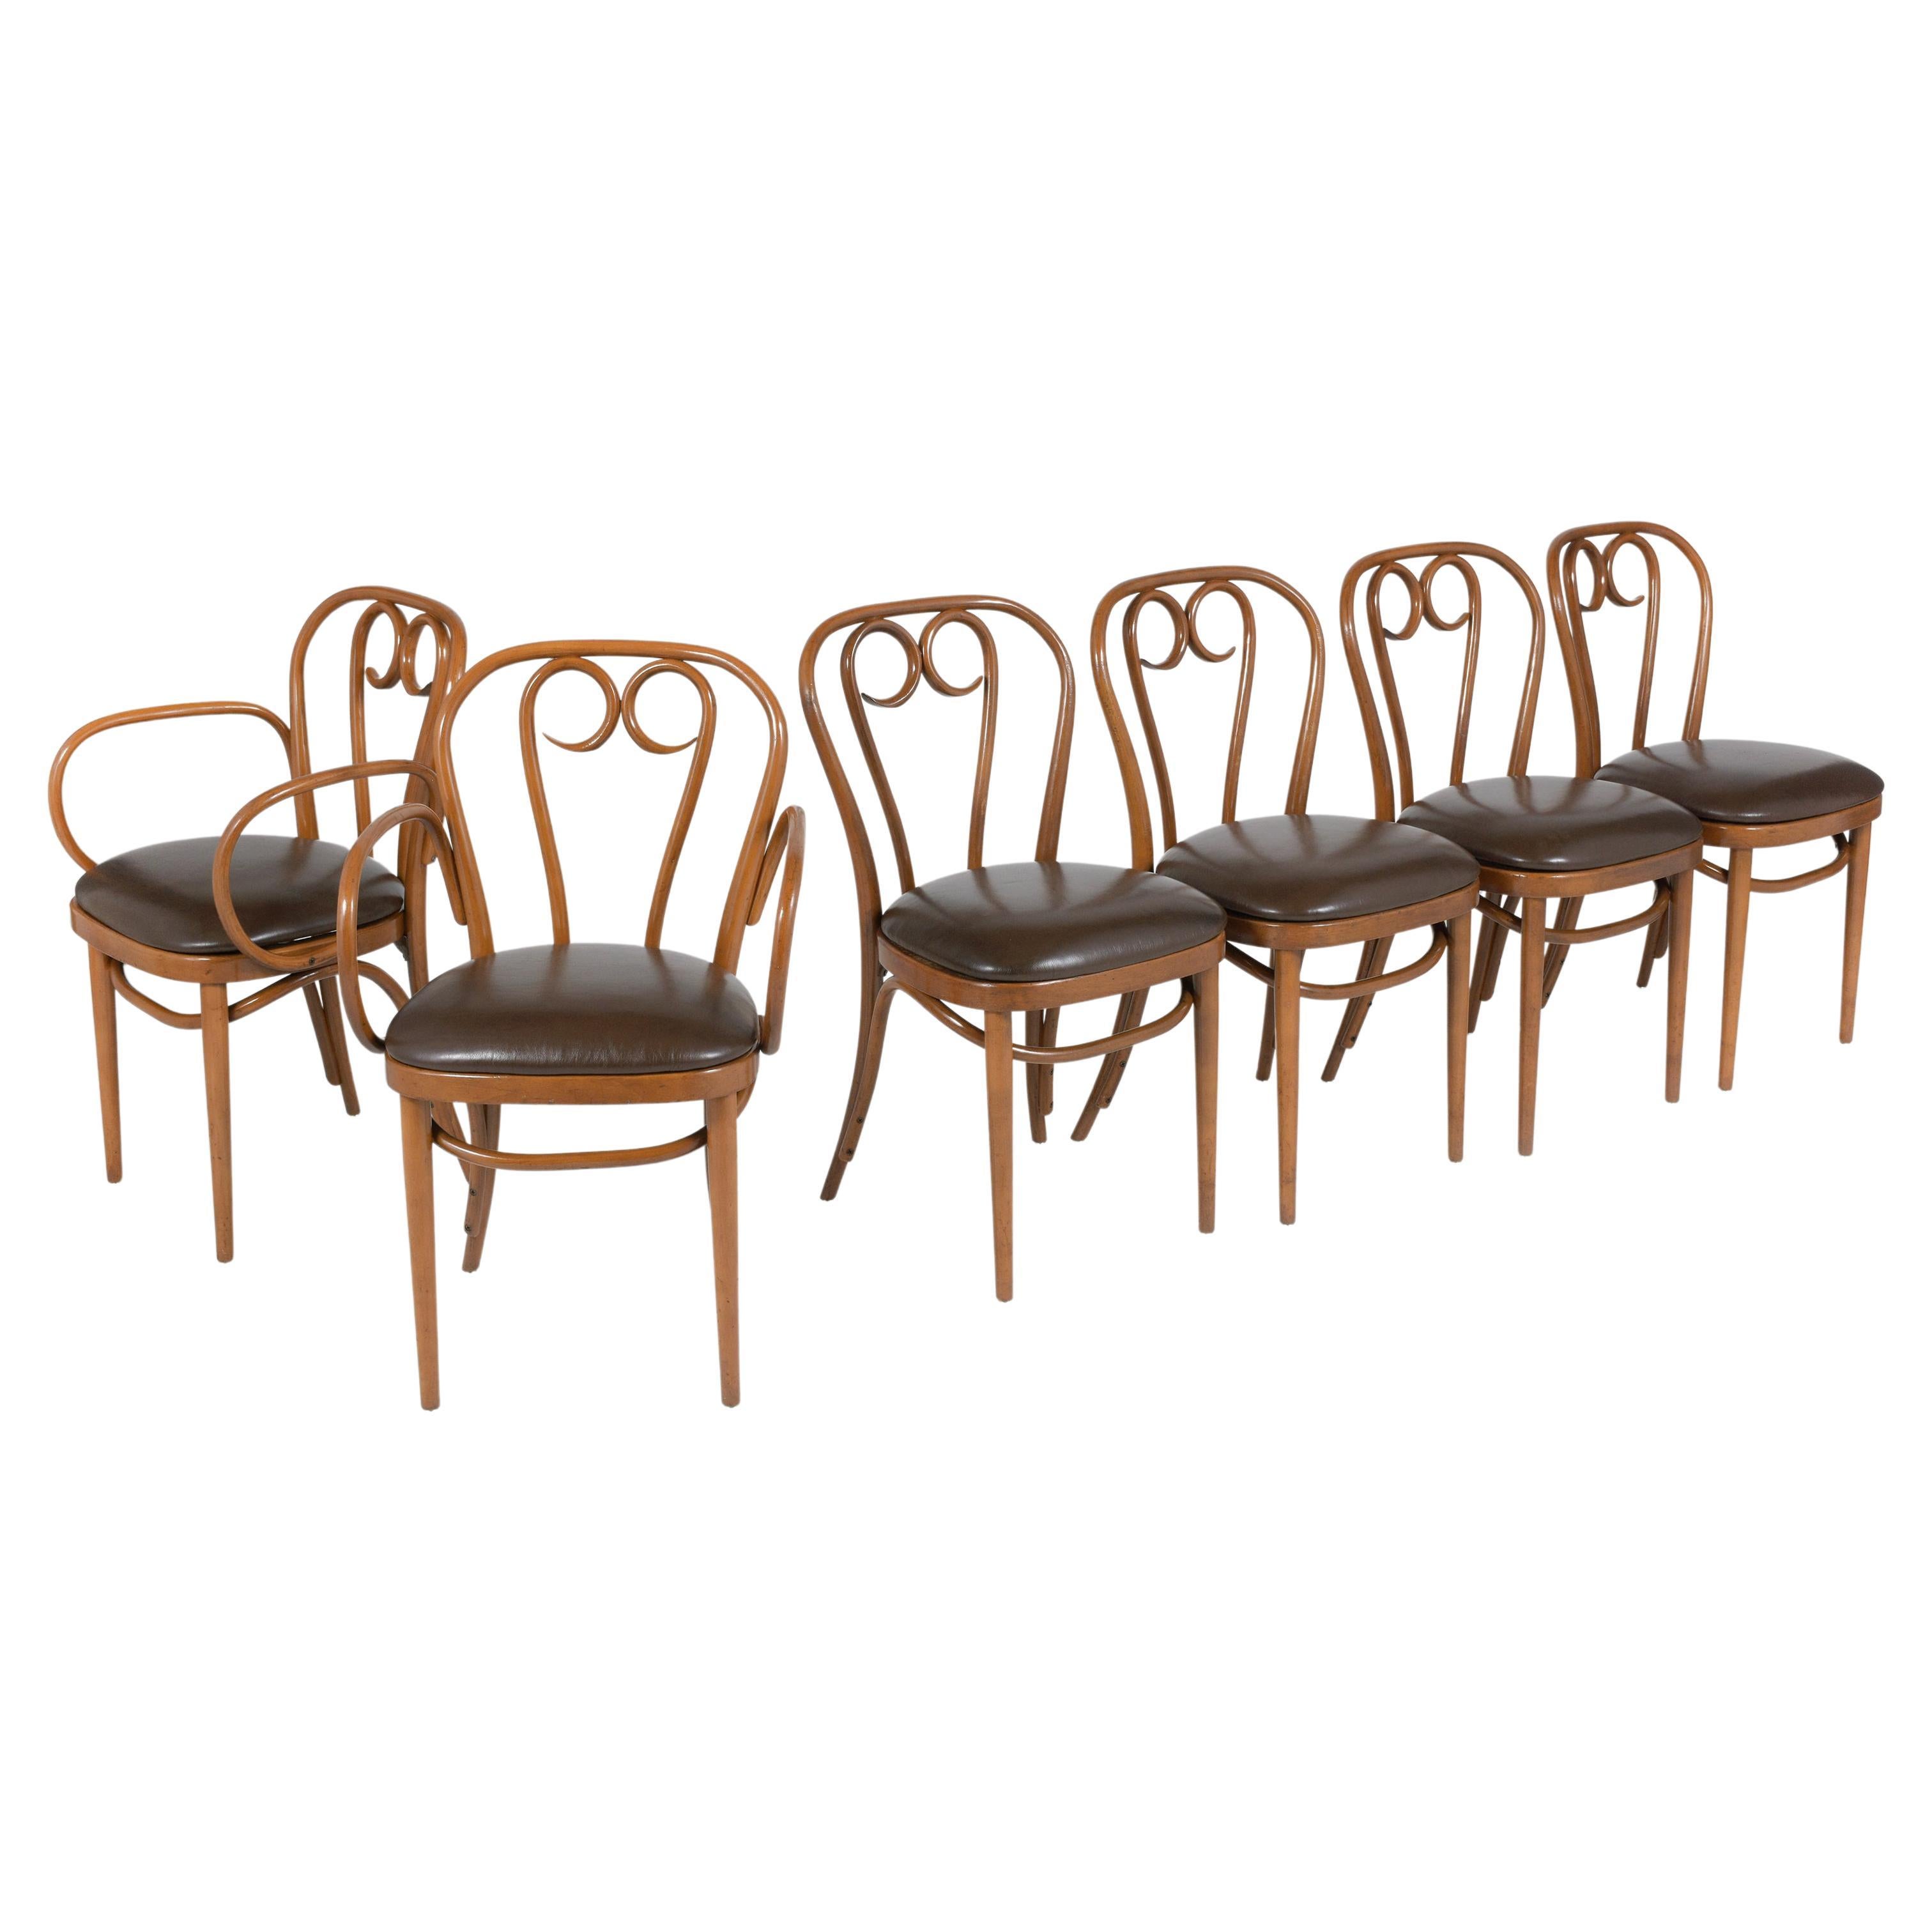 Cet ensemble de six chaises de salle à manger en bois courbé de Thonet, comprenant deux fauteuils et quatre chaises d'appoint, a été restauré avec amour pour retrouver sa splendeur d'antan. Ces chaises emblématiques témoignent du design intemporel